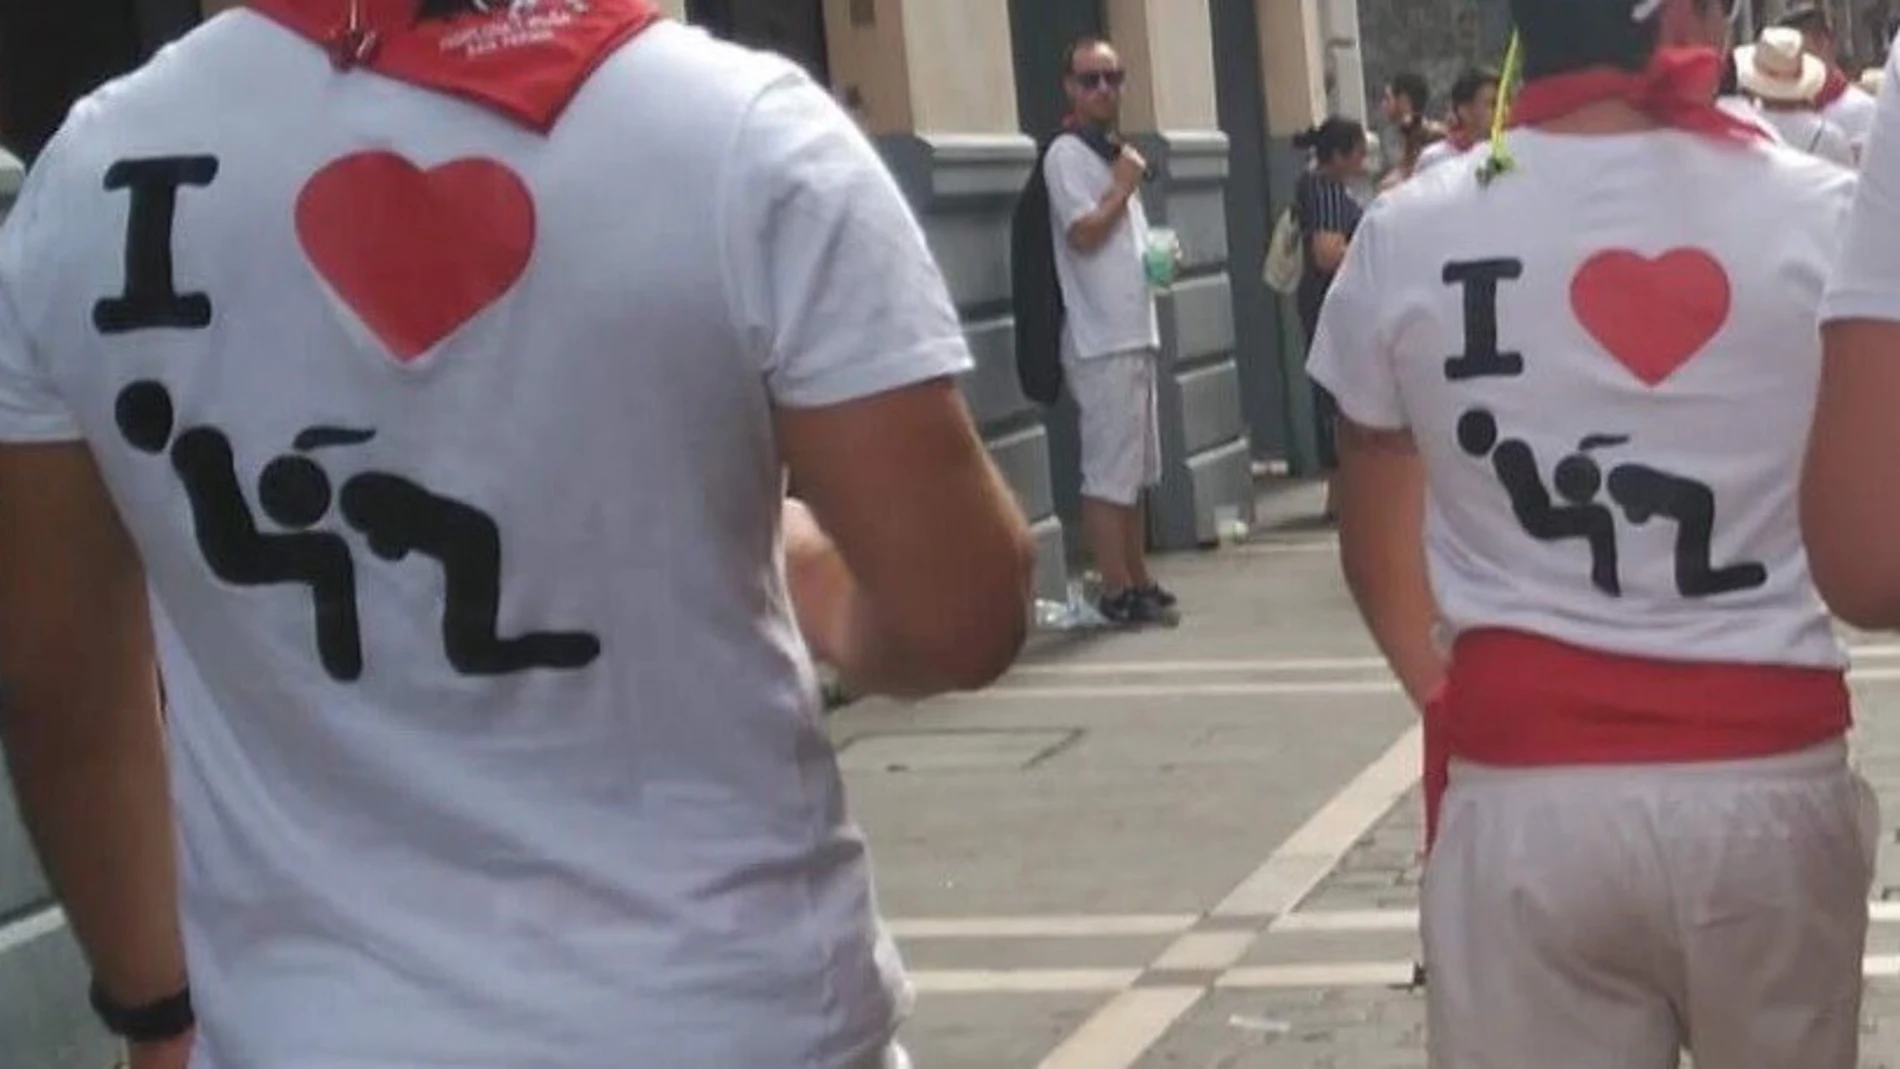 Camisetas con mensajes machistas vistas en San Fermín